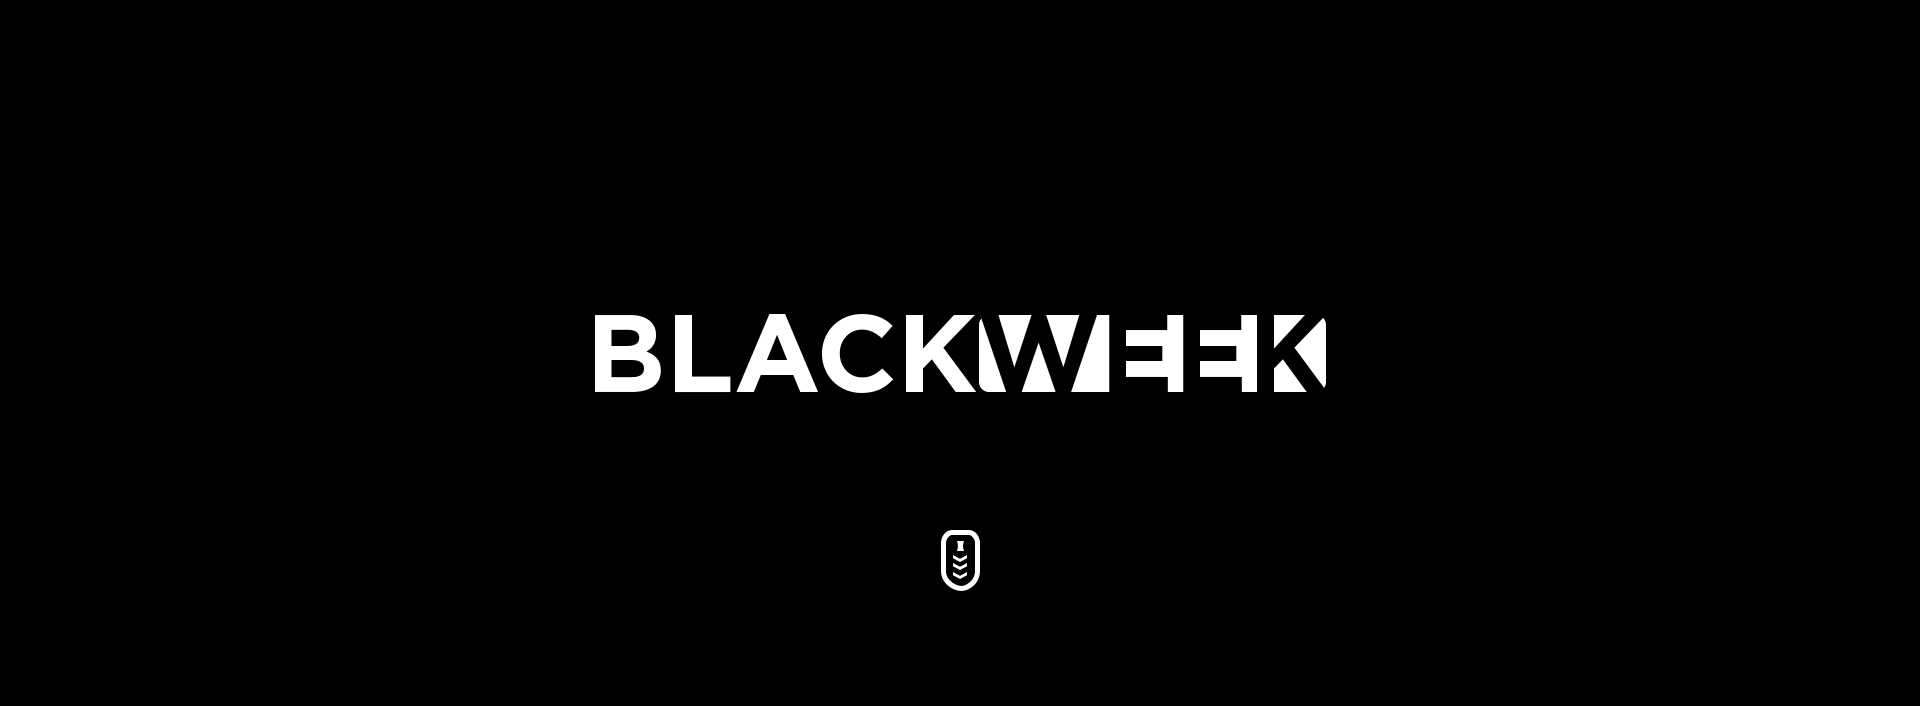 Black week 2021 - slider główny 